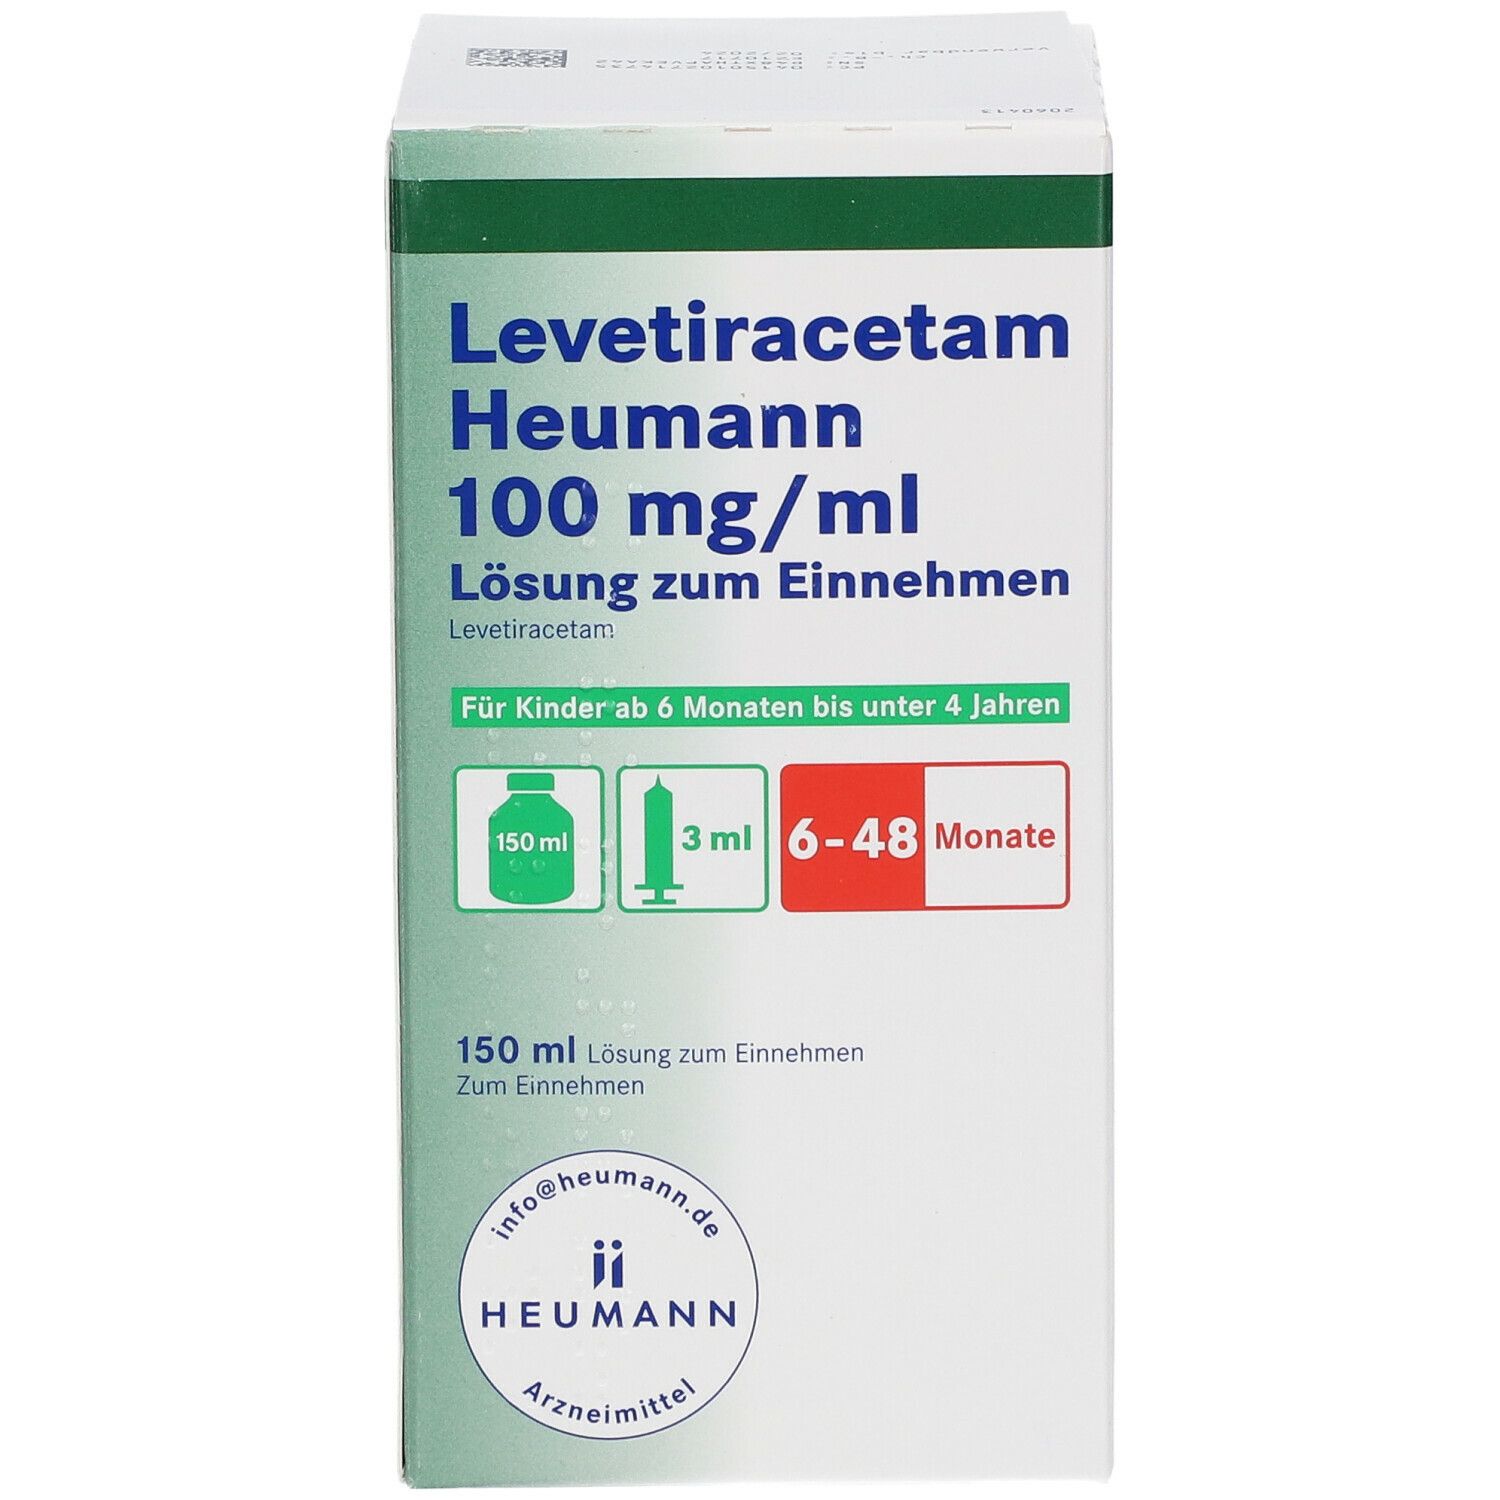 Levetiracetam Heumann 100 mg/ml